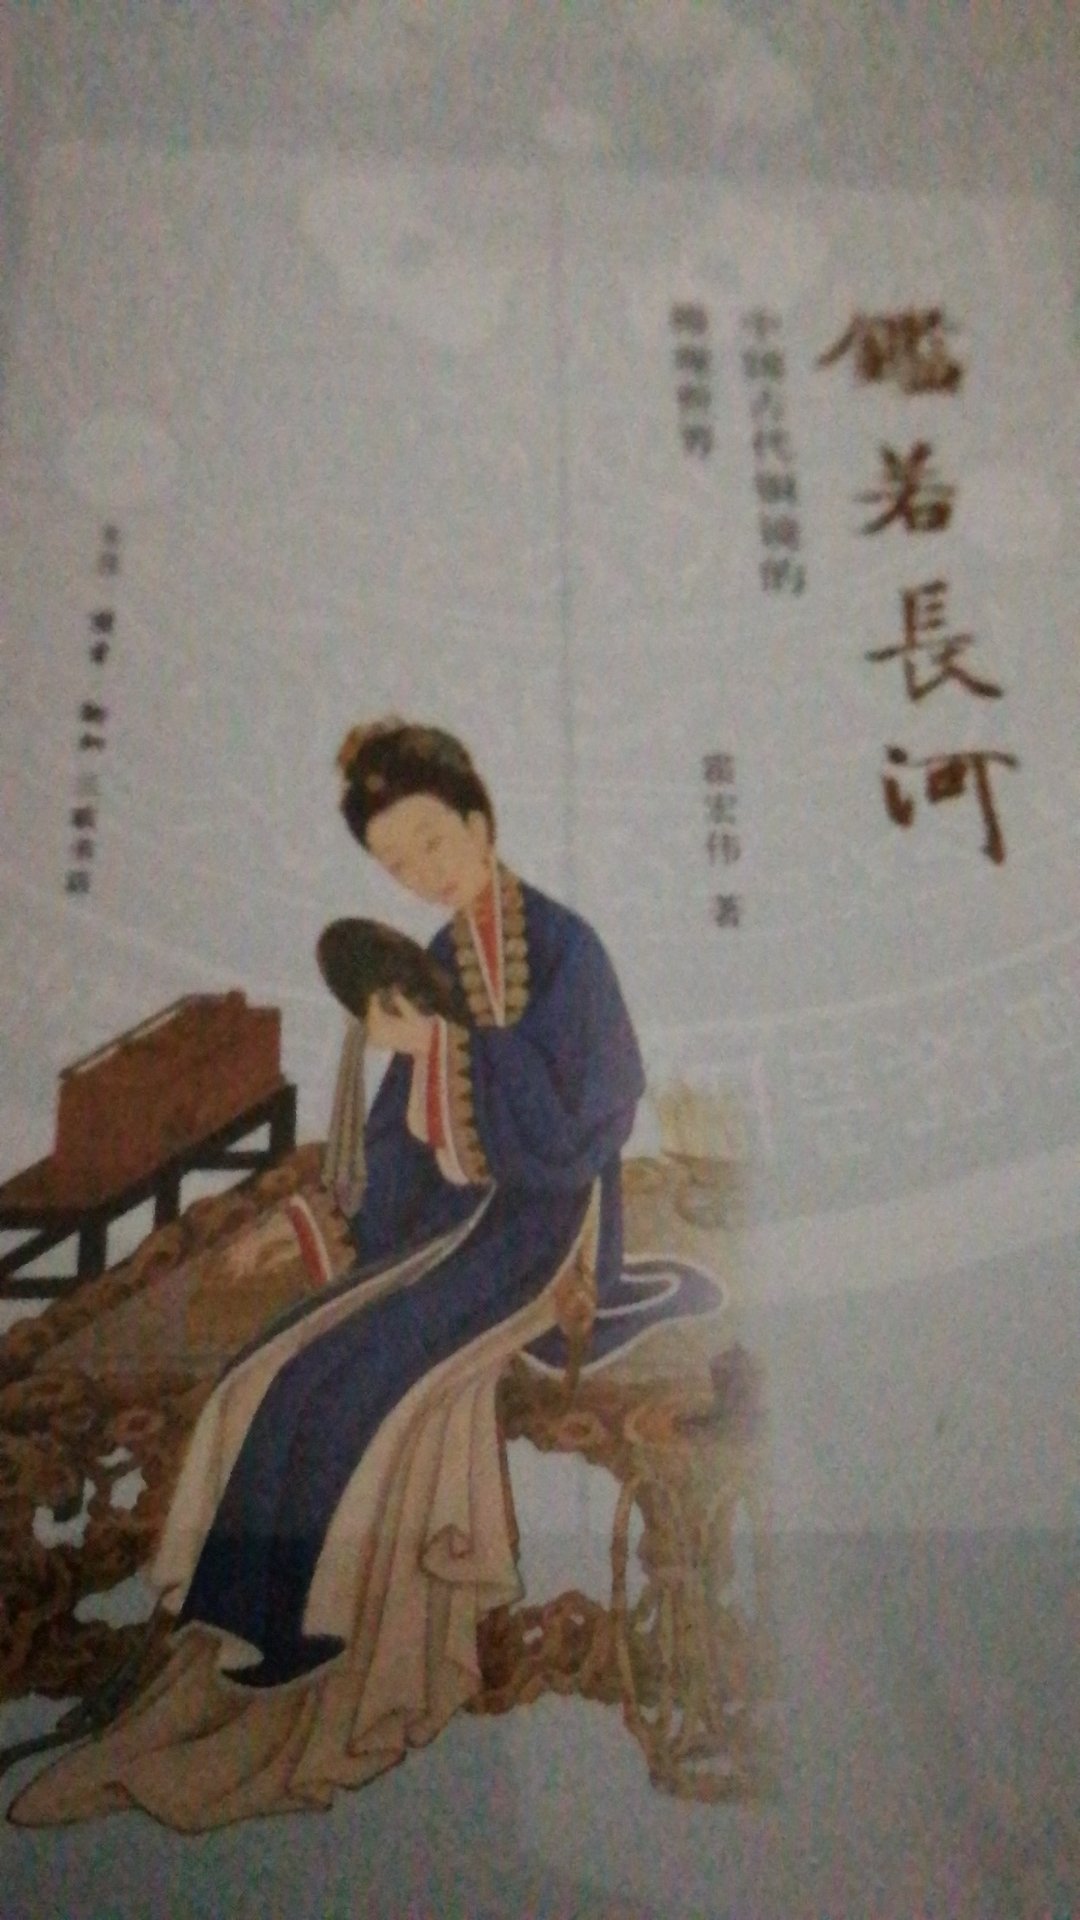 《鉴若长河》一书对中国古代铜镜做了全景式描述。